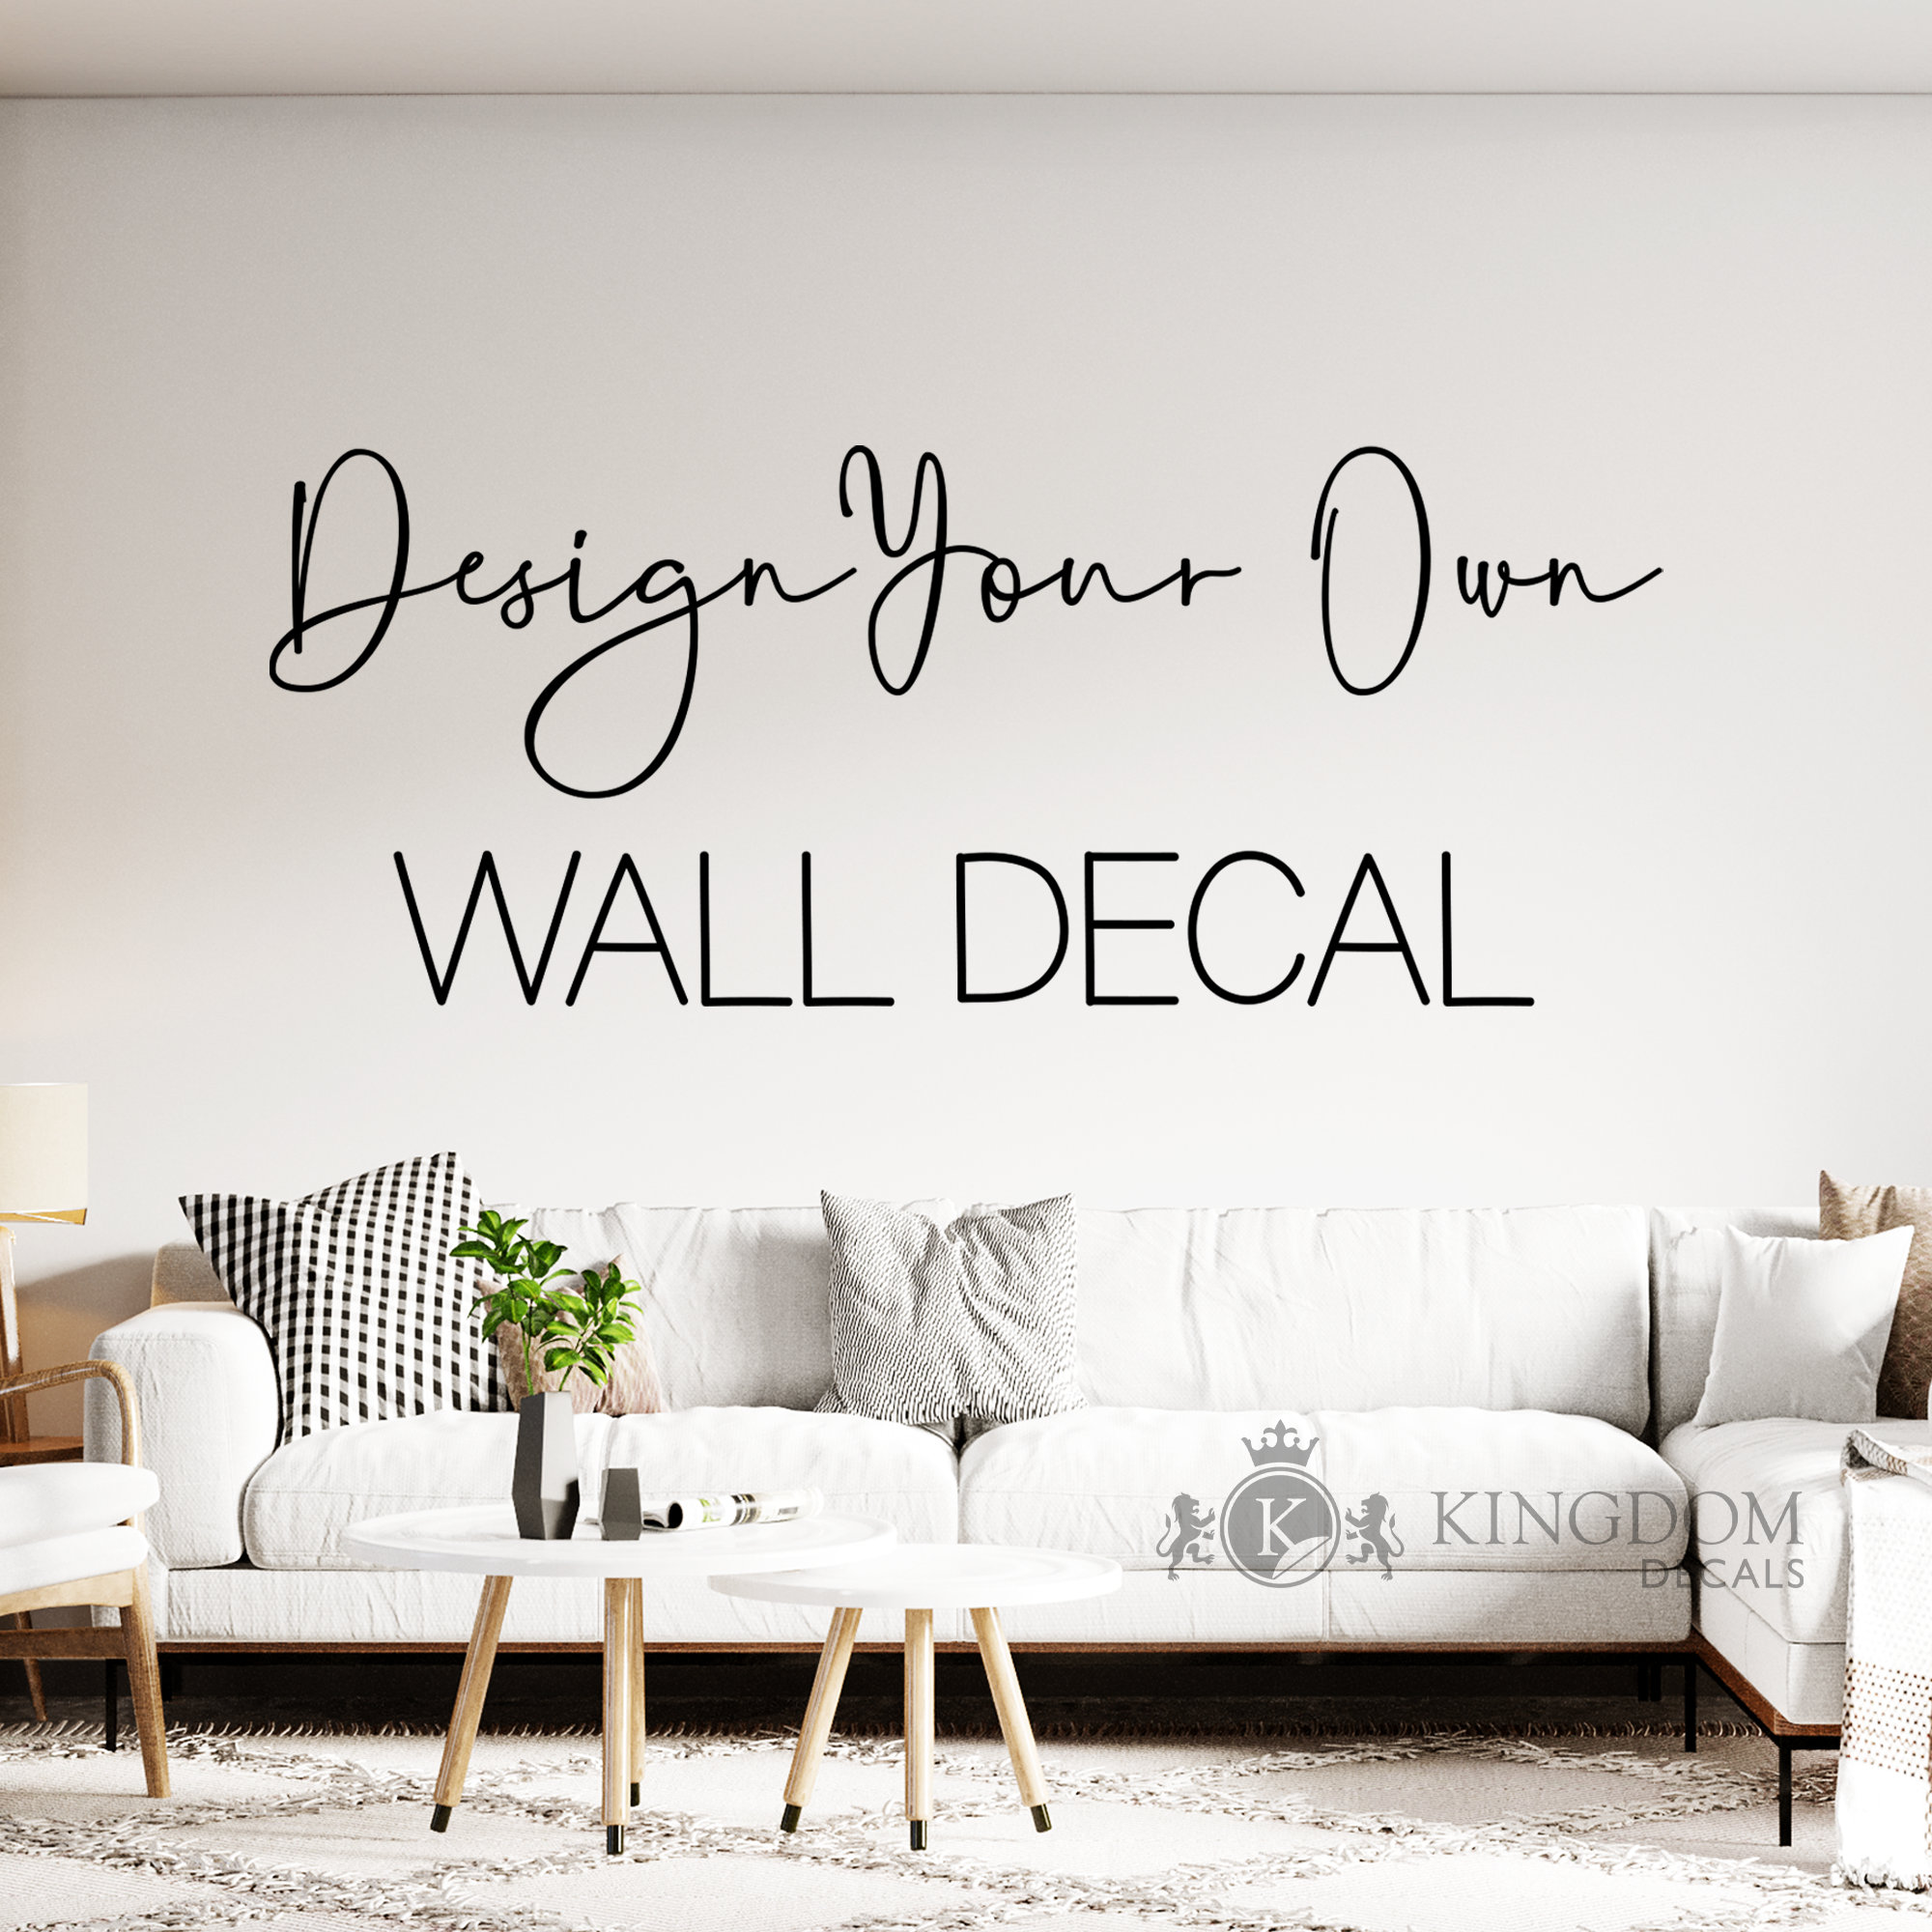 Wall covering - Vinyle adhésif pour décor mural - Store Deléage